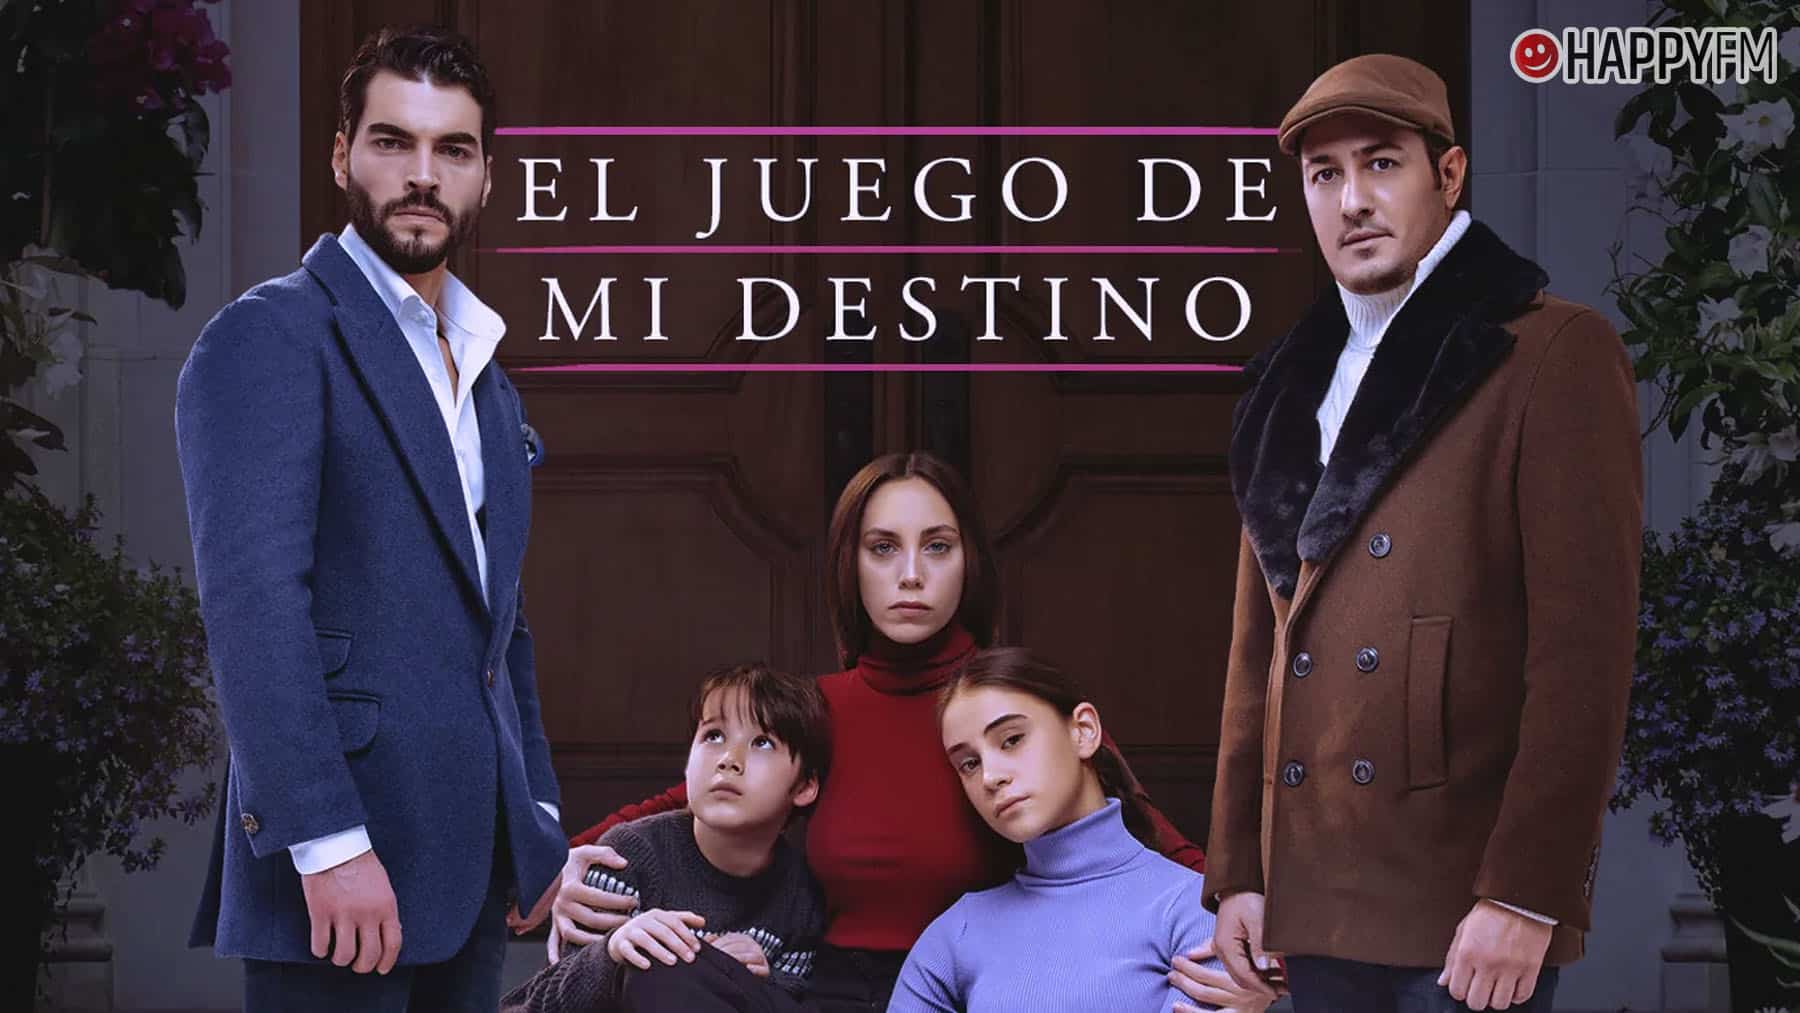 ‘El juego de mi destino’: Qué días se emite y dónde ver (online y tv) la serie turca en España loading=